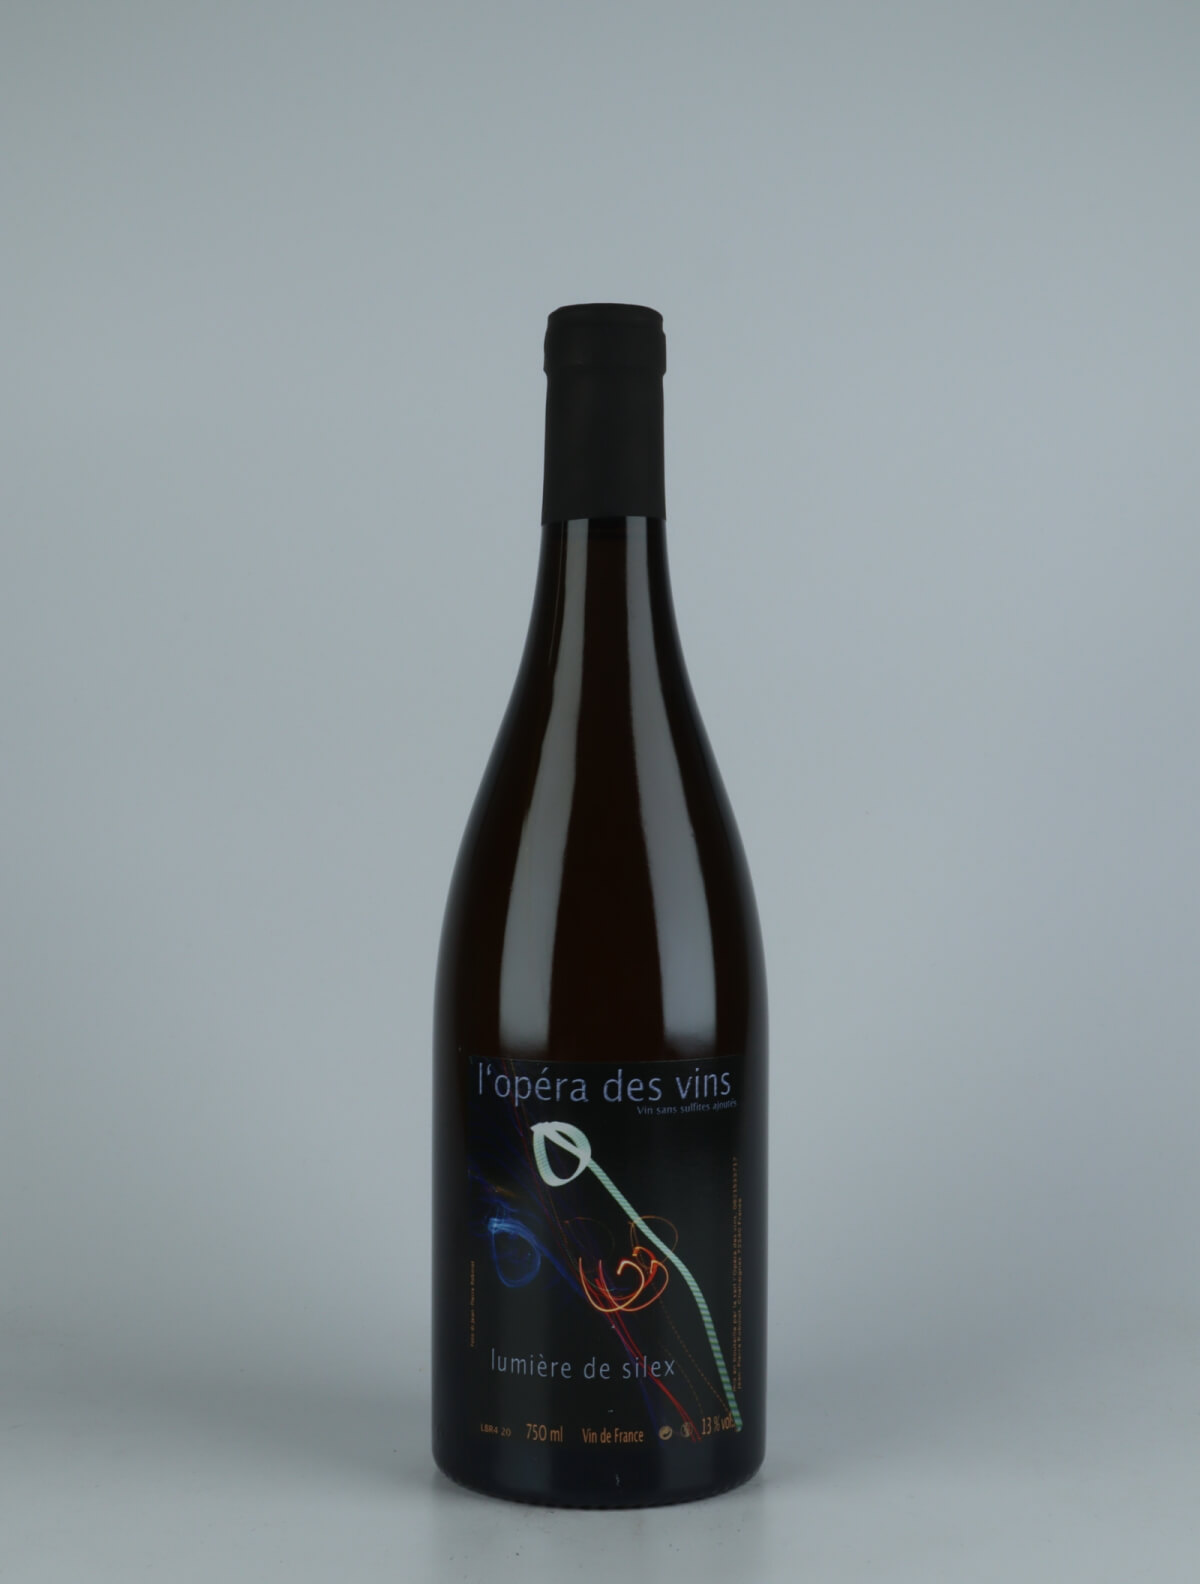 A bottle 2020 Lumière de Silex White wine from Jean-Pierre Robinot, Loire in France